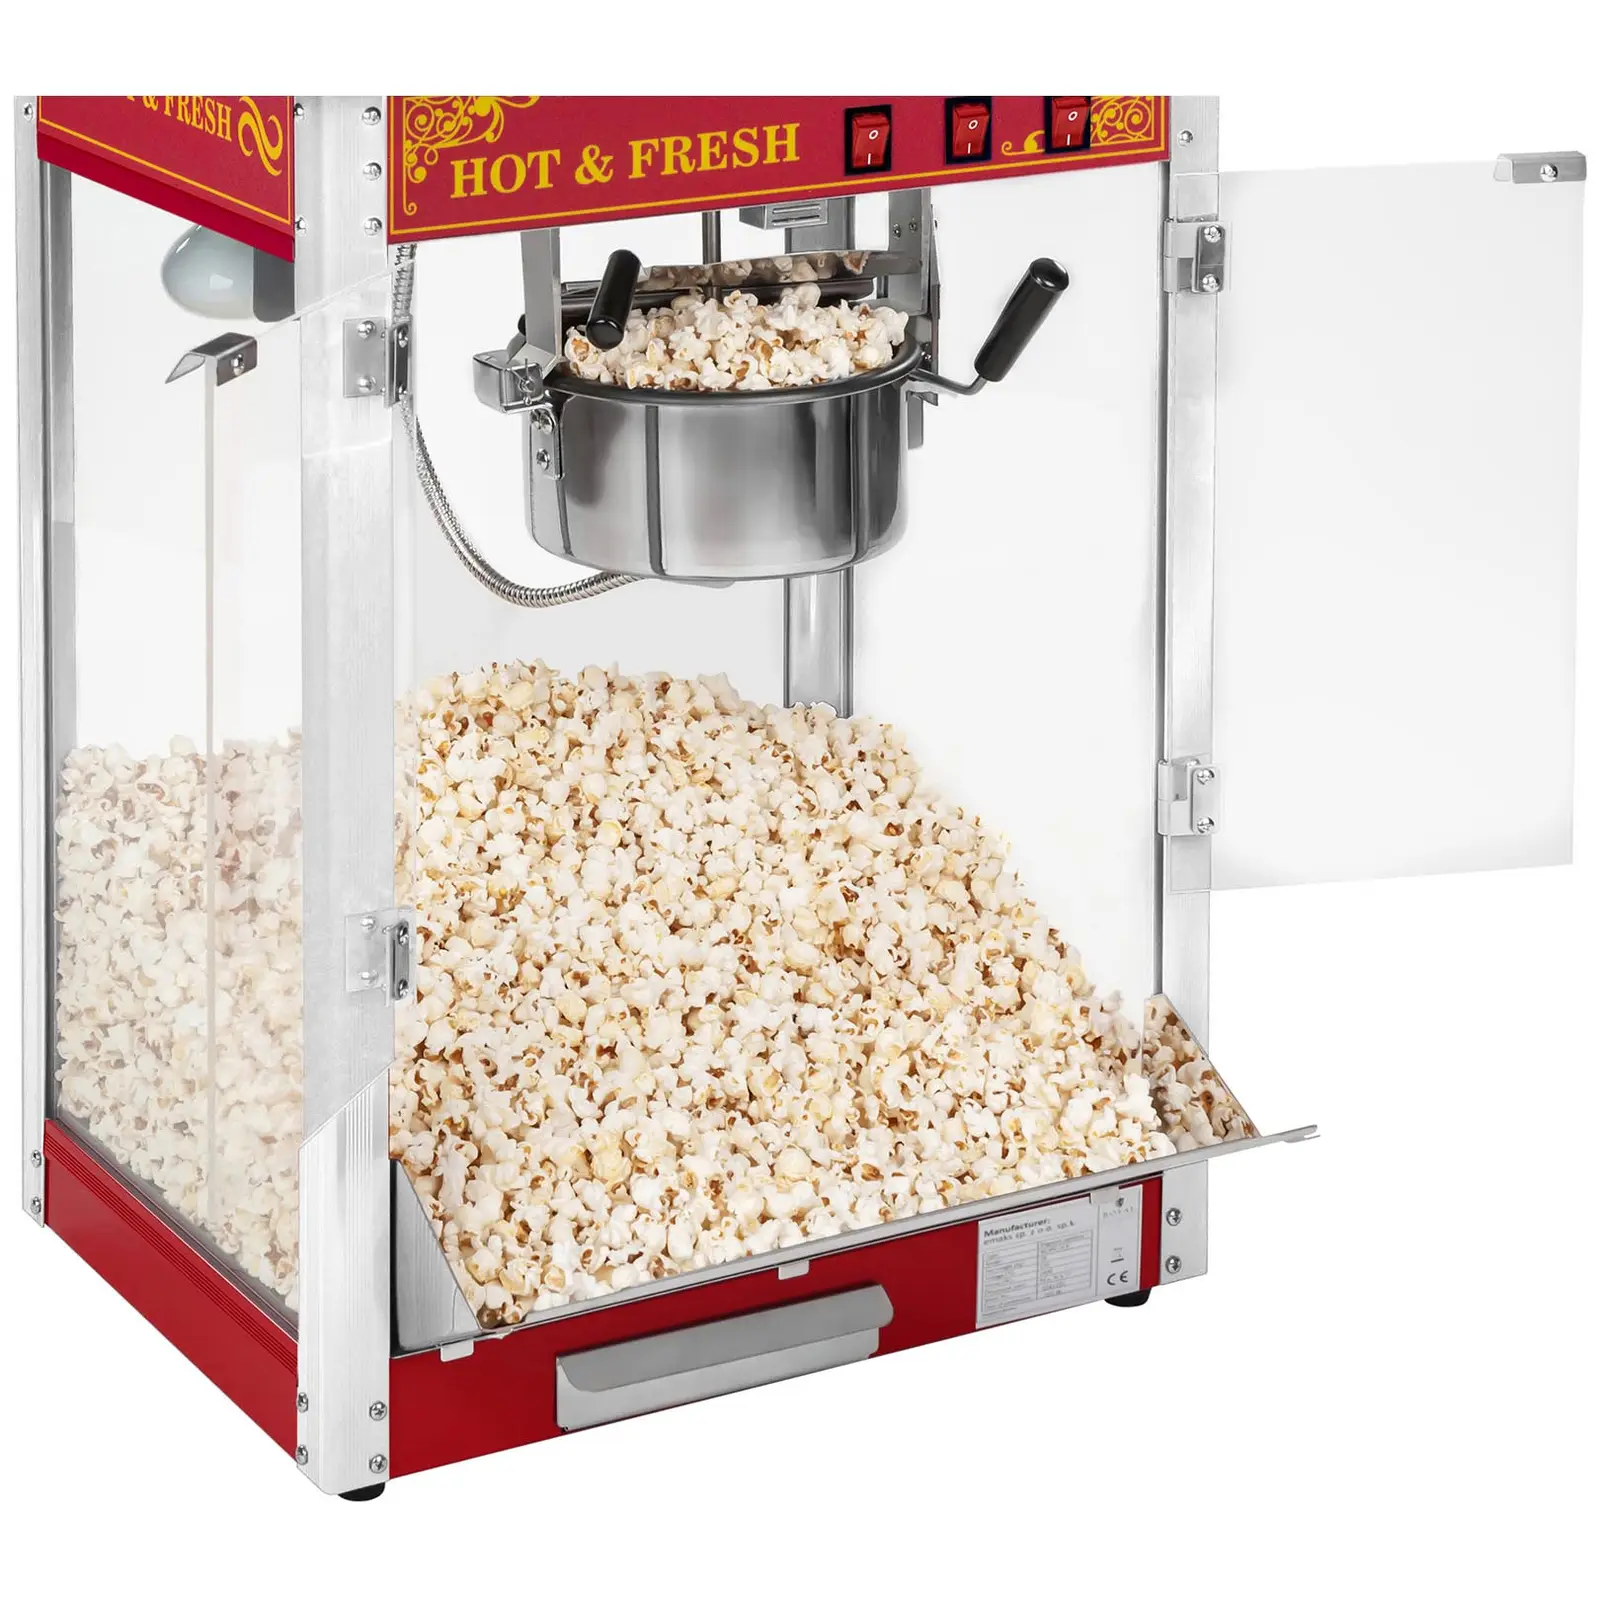 Maszyna do popcornu - czerwona - amerykański design